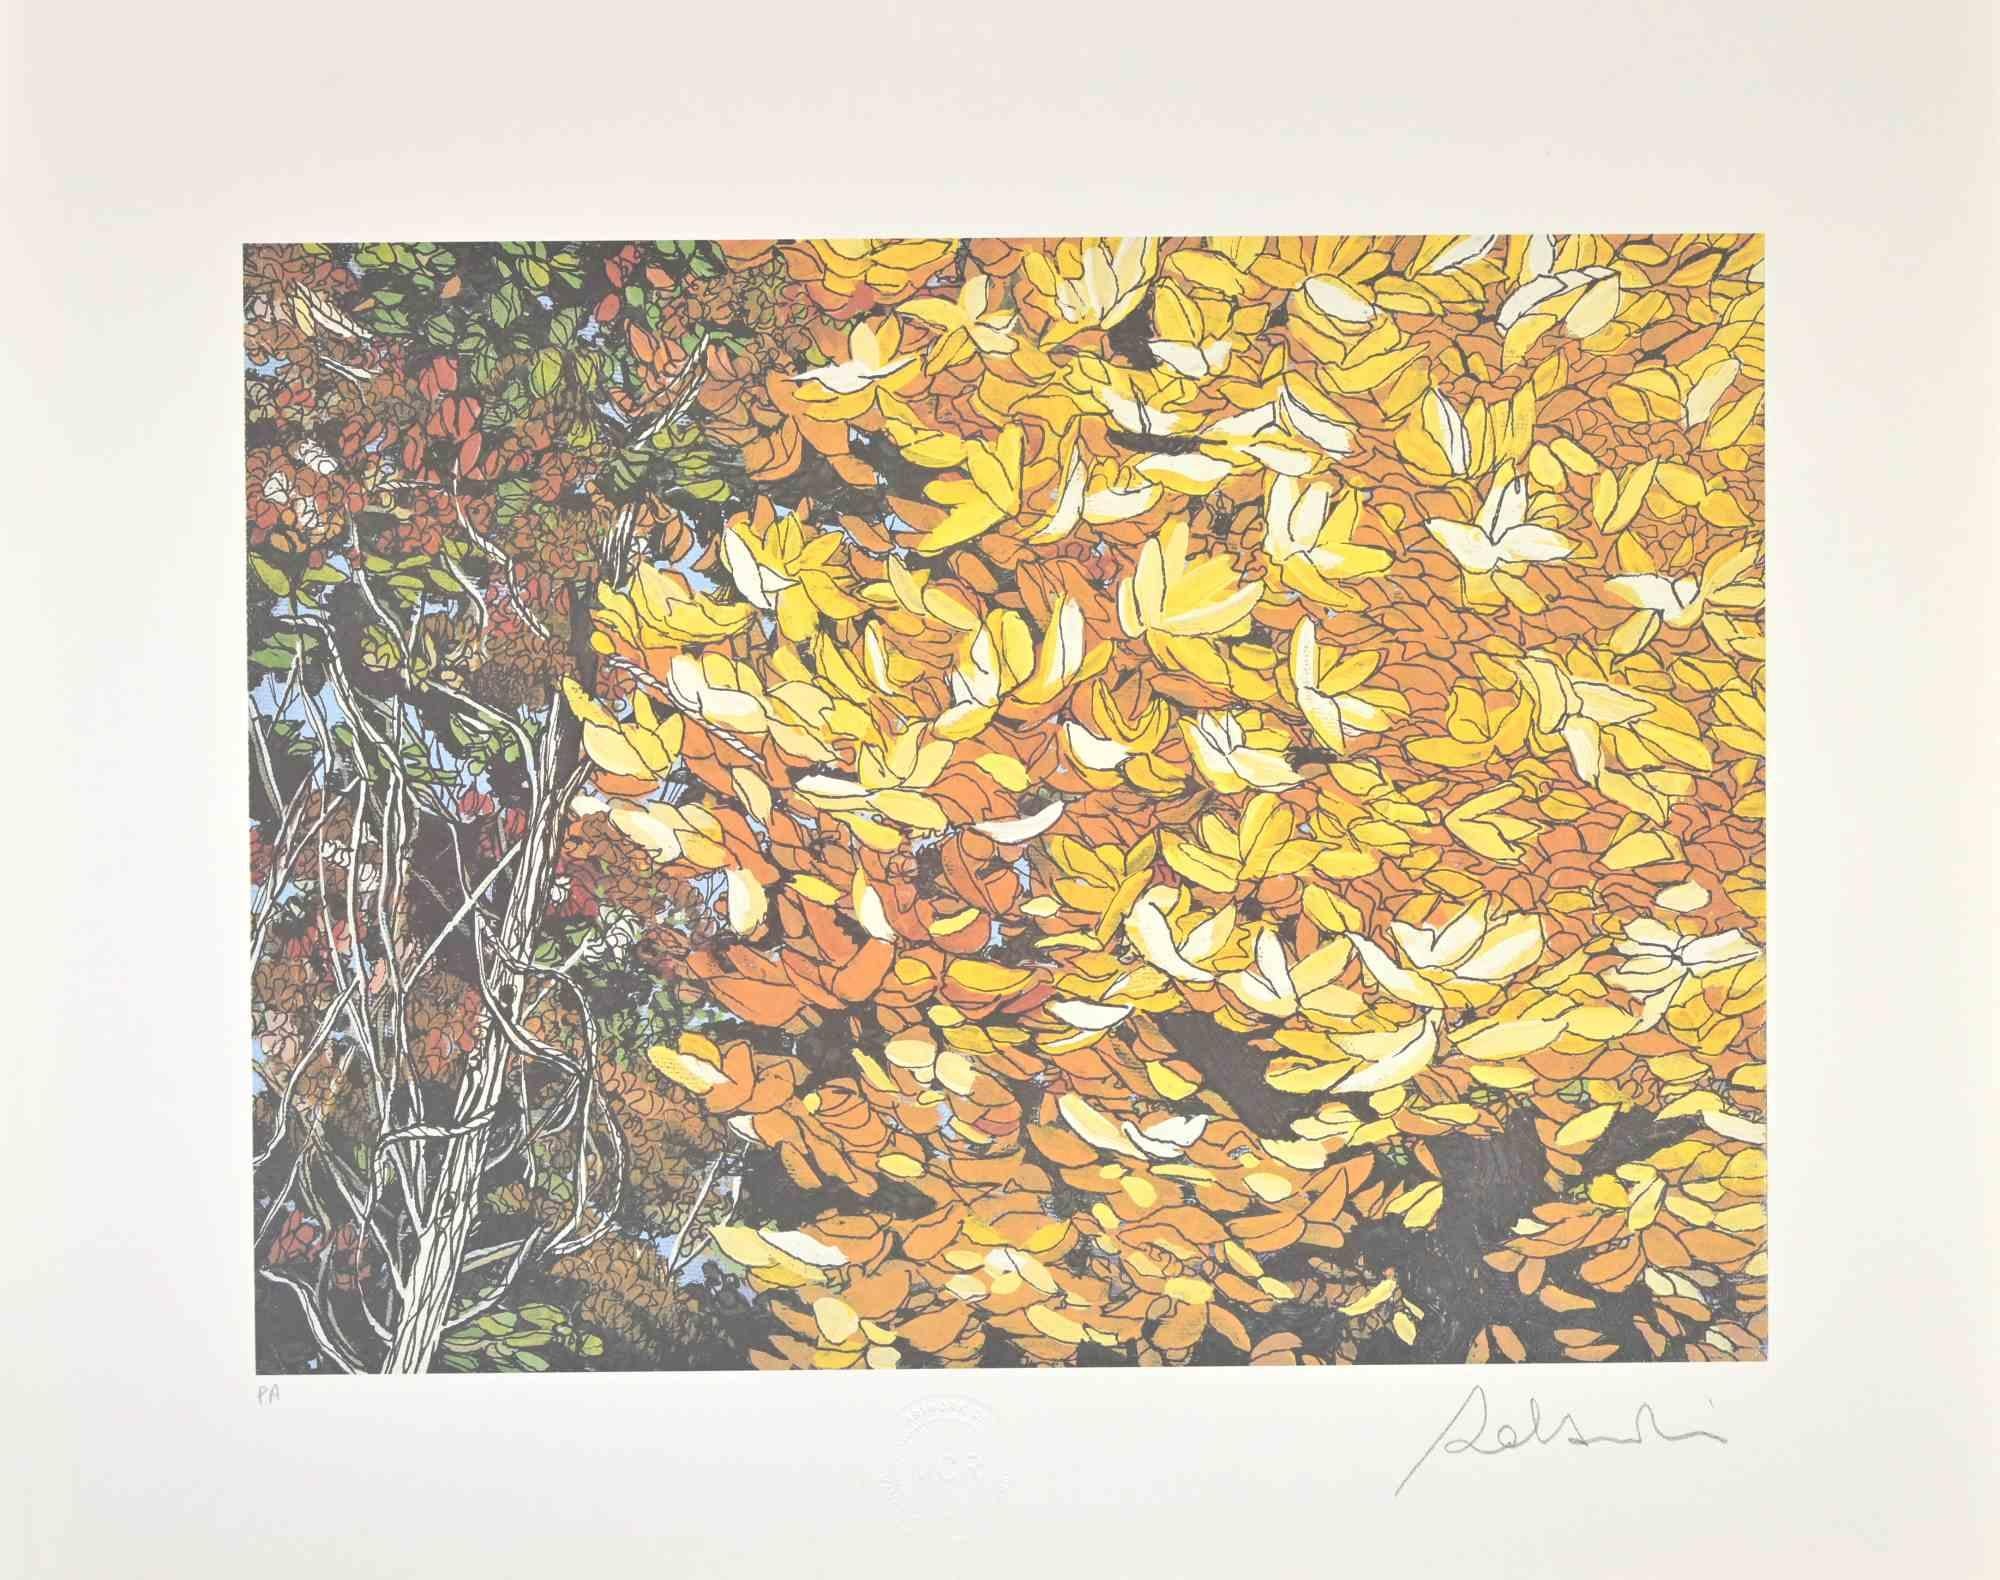 Rolandi (Maurizio Coccia) Landscape Print - Landscapes Of Autumn - Screen Print by Rolandi - 1980s